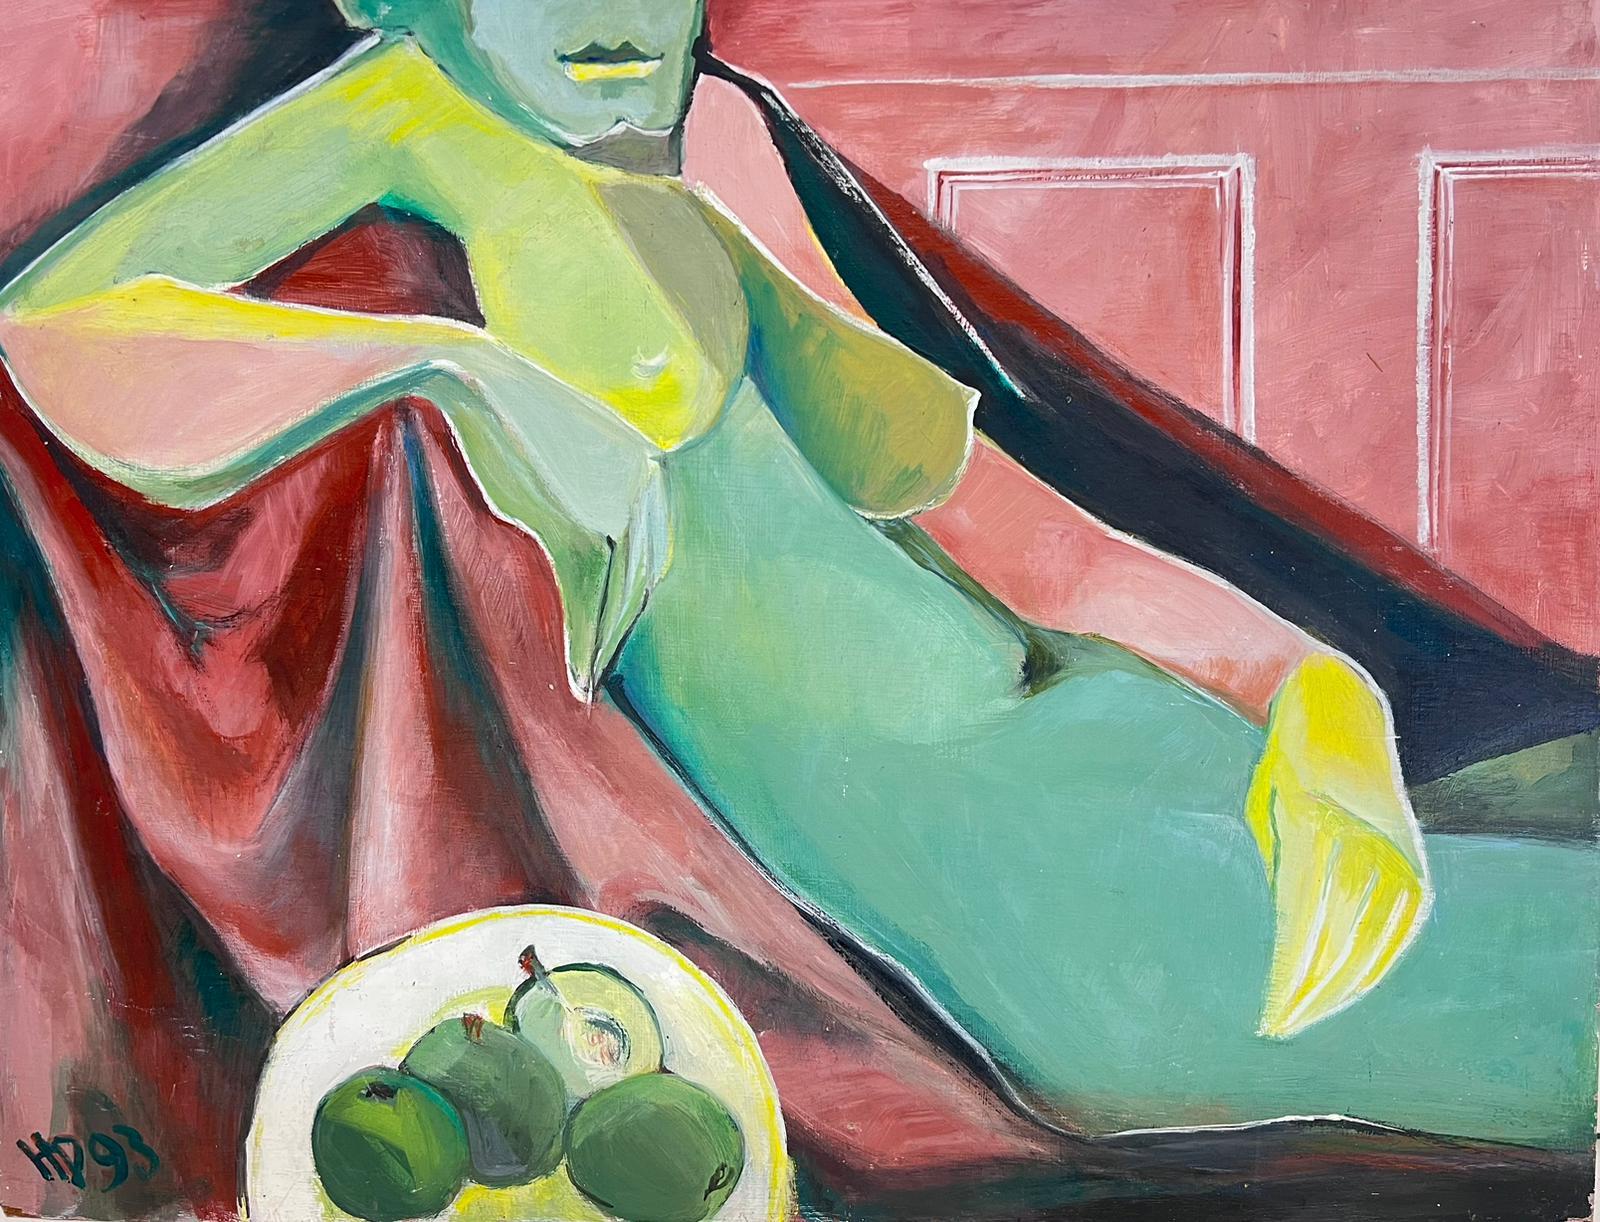 Nude Painting Helene Dadone - Peinture à l'huile cubiste française du 20e siècle représentant une femme nue avec des pommes vertes, signée